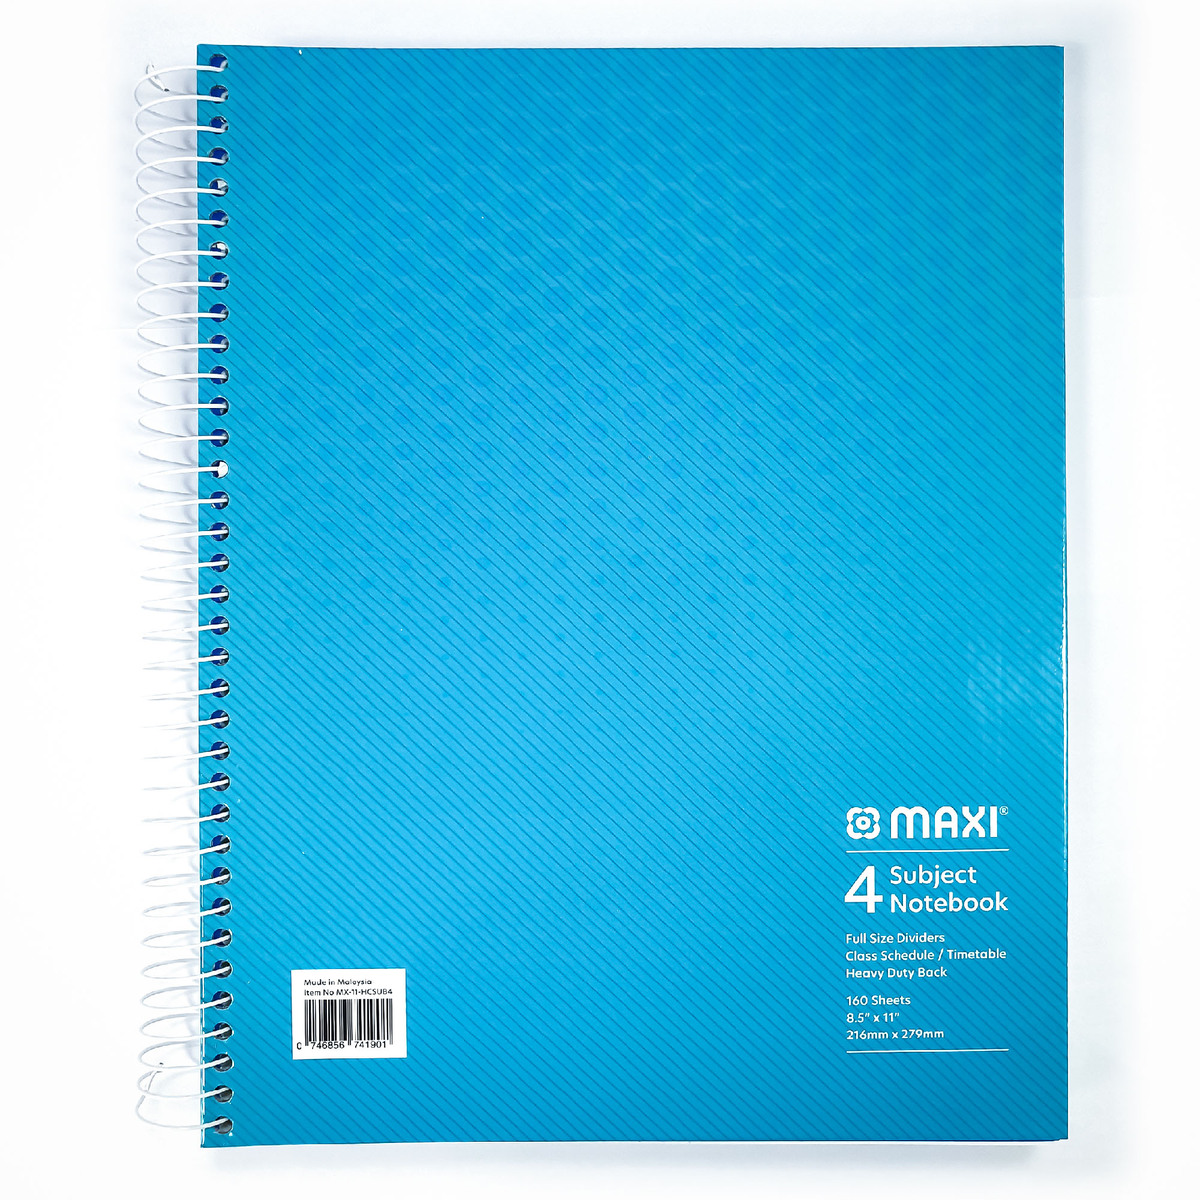 ماكسي مفكرة ورقية بسلك بغطاء صلب مقاس 4 موضوعات ، 11 بوصة × 8.5 بوصة ، 160 ورقة ، الوان متنوعة ، MX-11-HCSUB4